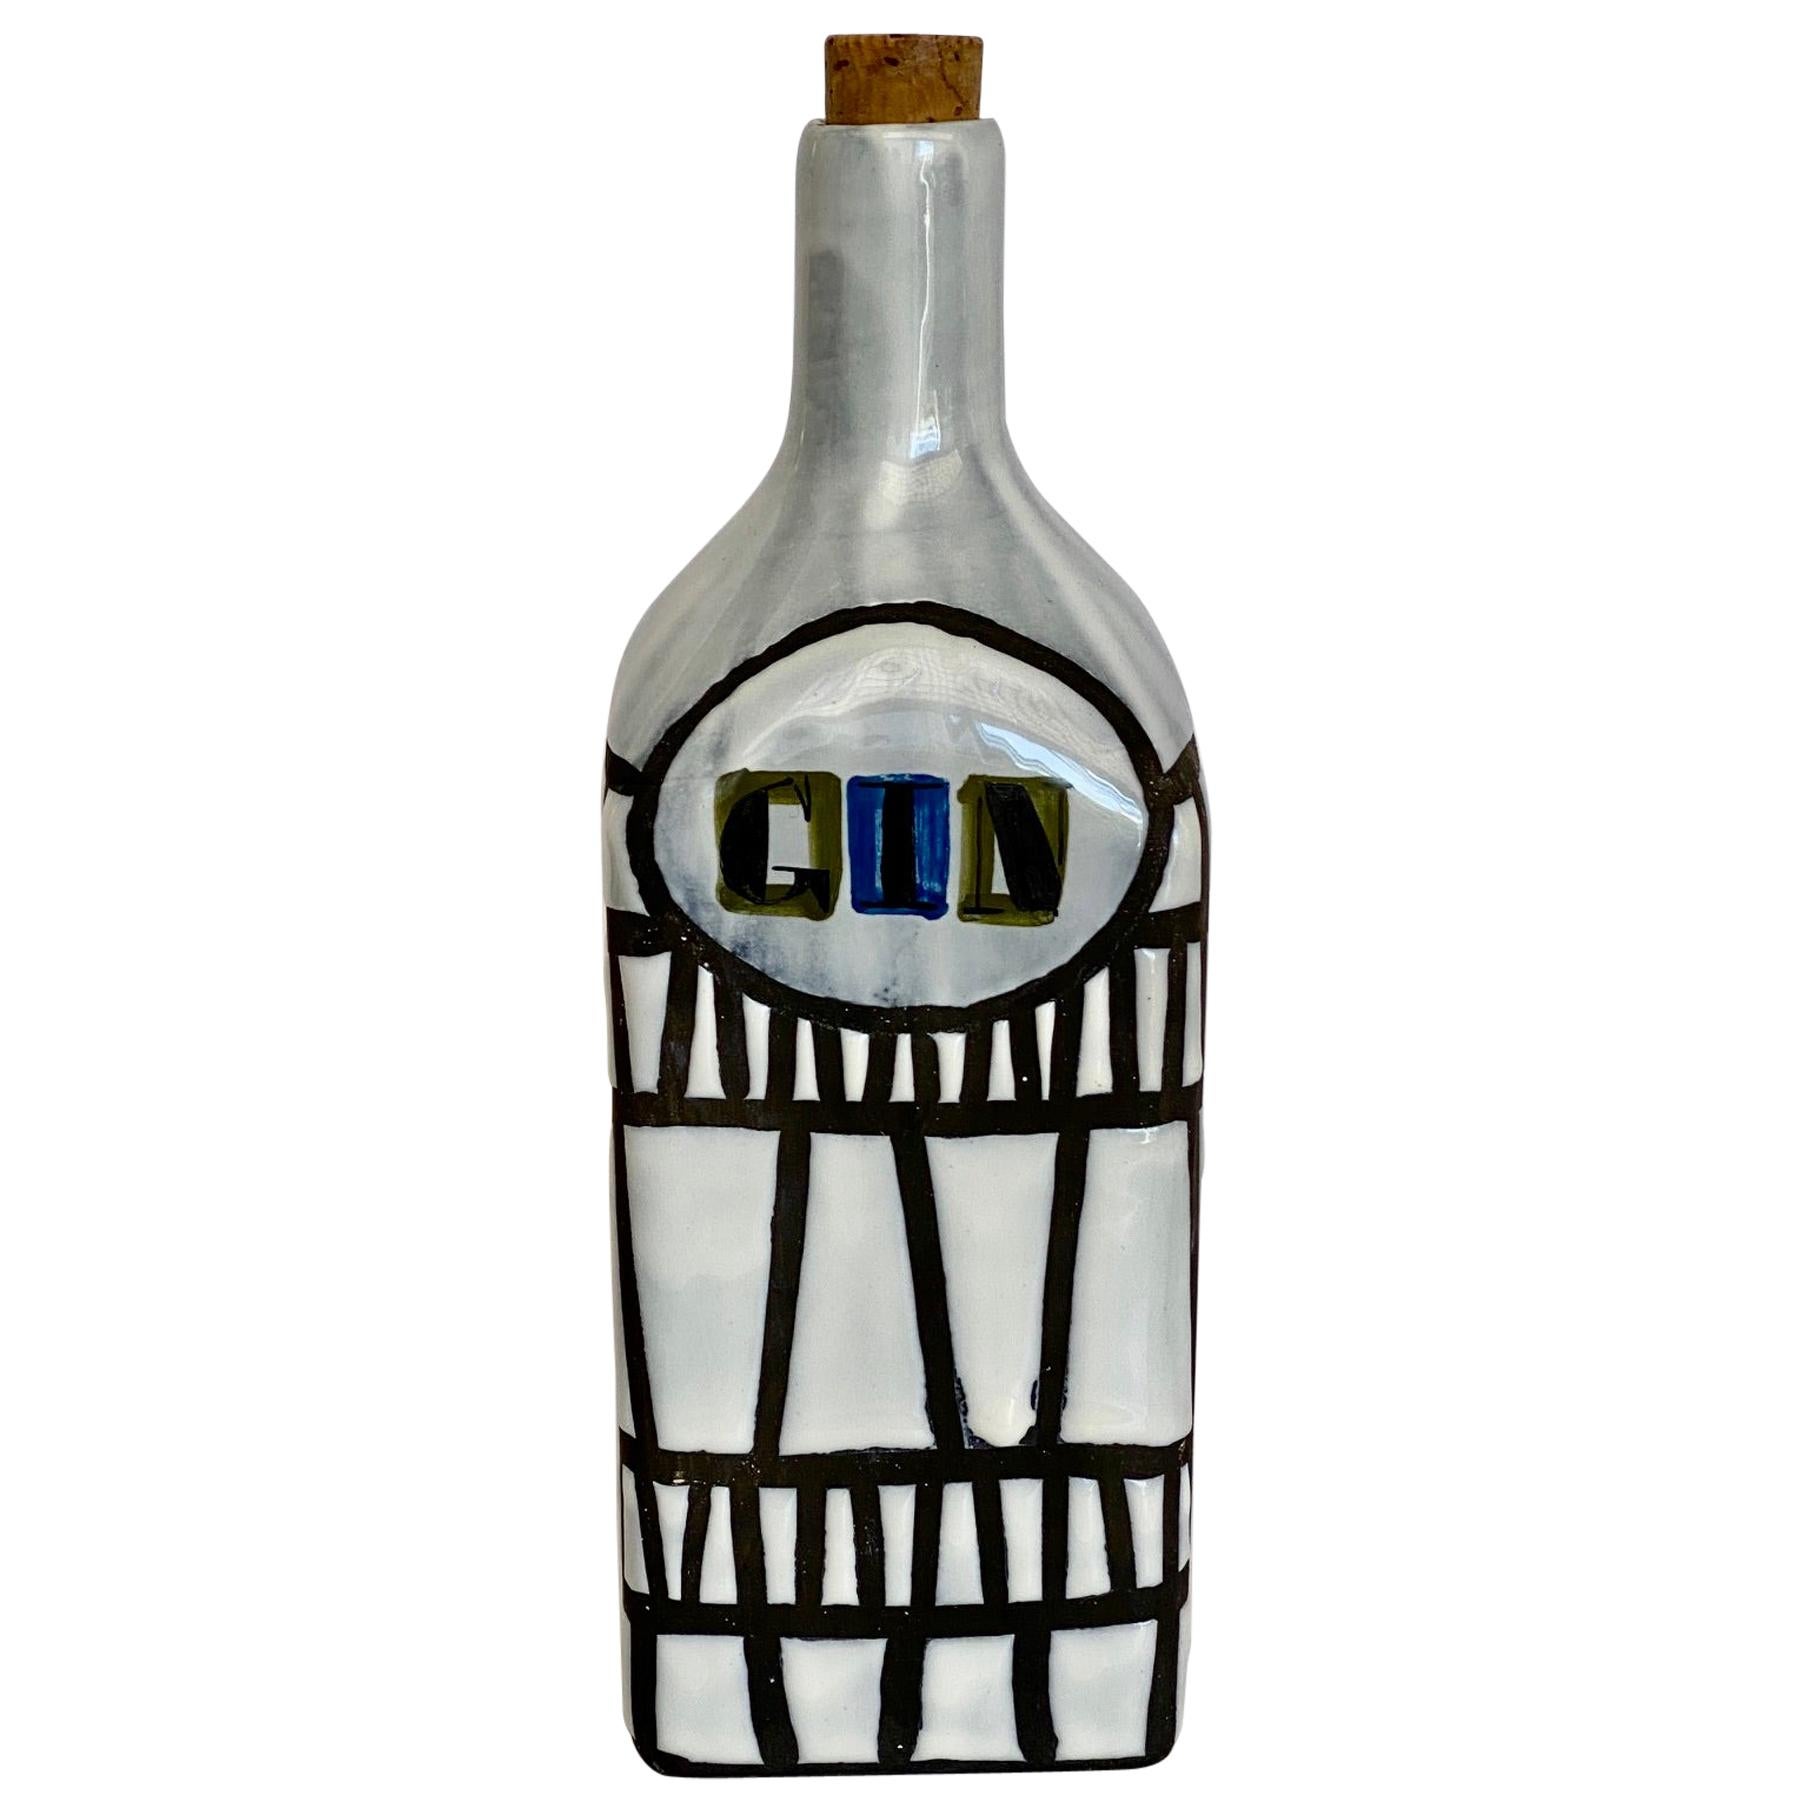 Roger Capron Keramik-Flasche „Gin“ aus Vallauris, 1950er Jahre